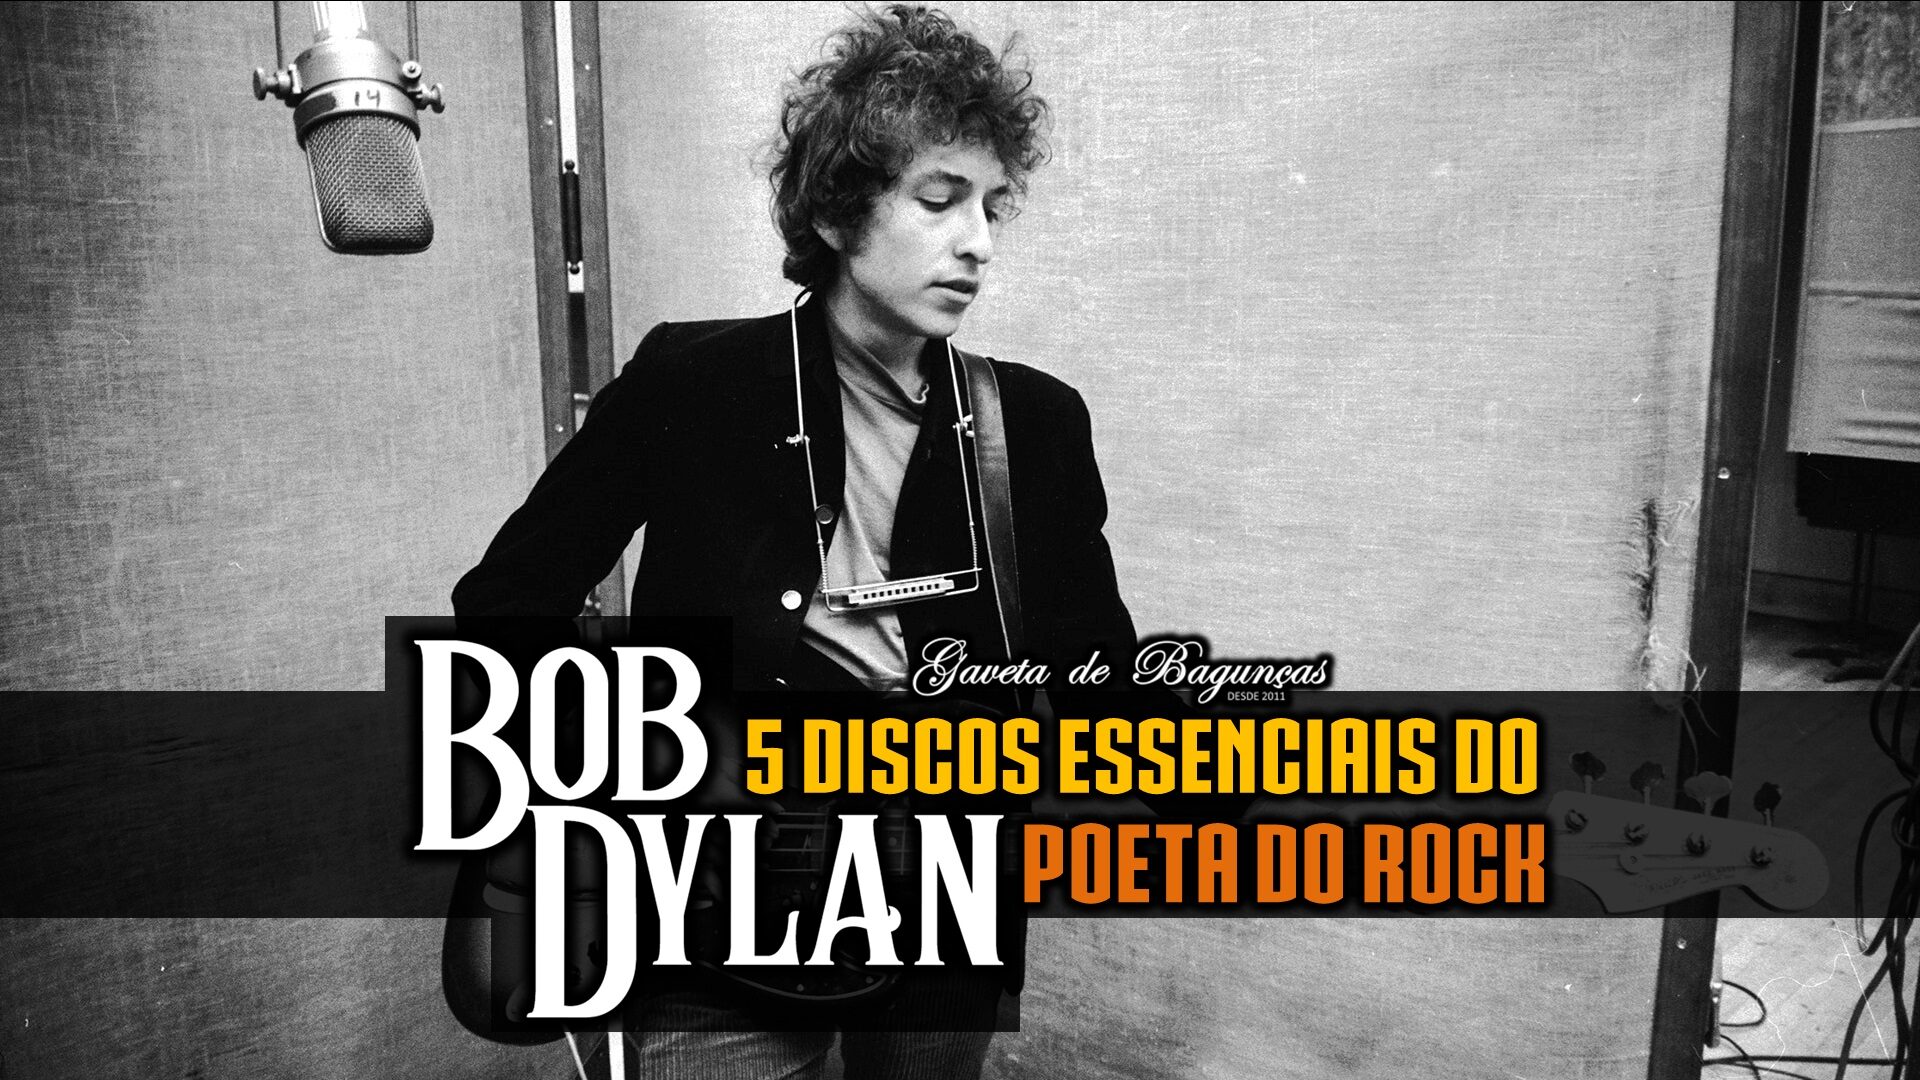 Mergulhe na discografia do mestre do Folk Rock, Bob Dylan! Entenda melhor sua influente produção com este guia essencial de seus cinco álbuns essenciais.